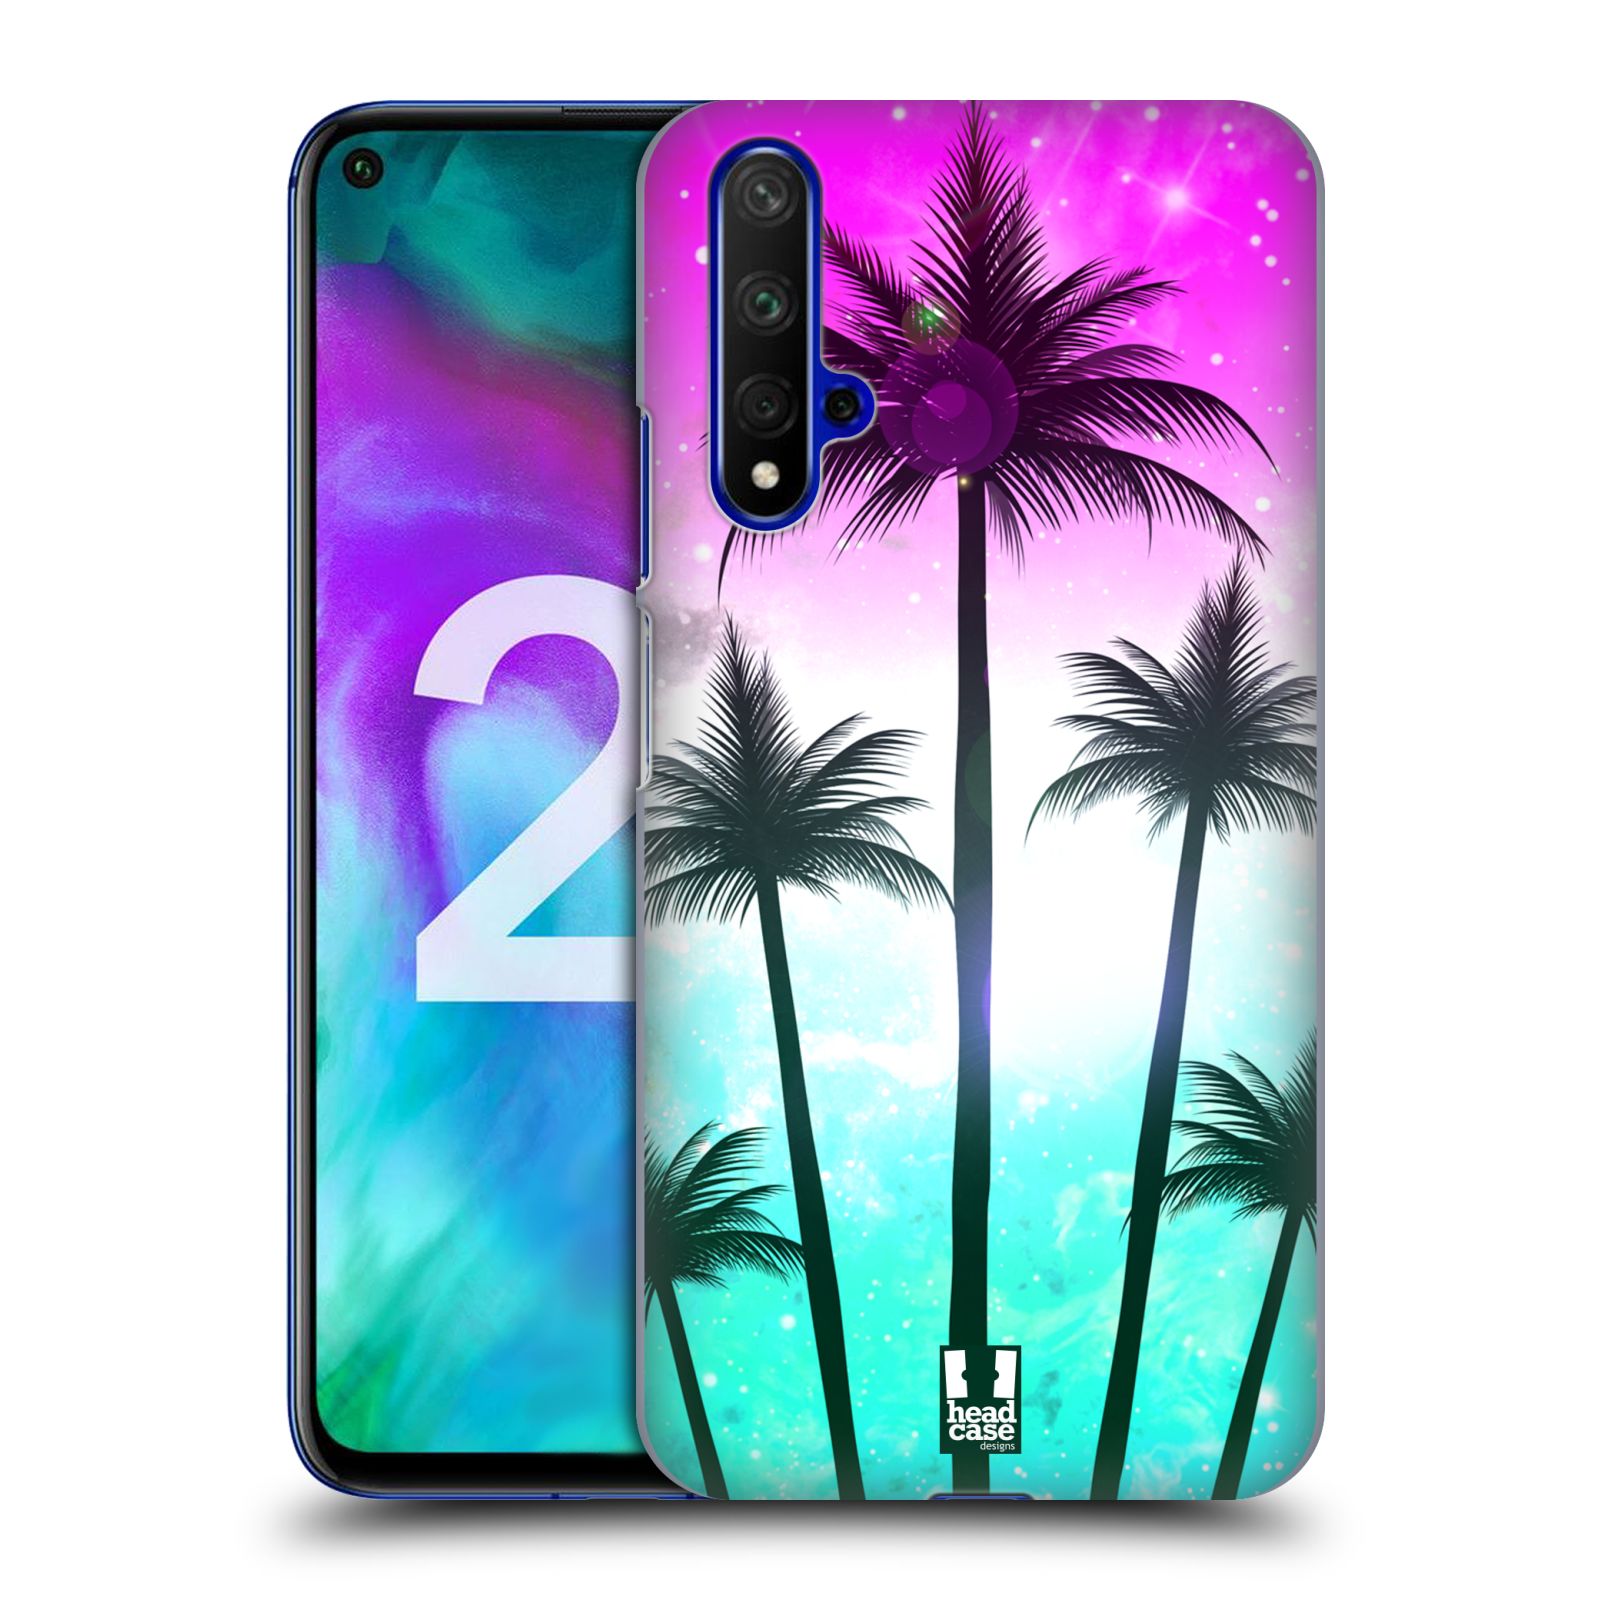 Pouzdro na mobil Honor 20 - HEAD CASE - vzor Kreslený motiv silueta moře a palmy RŮŽOVÁ A TYRKYS